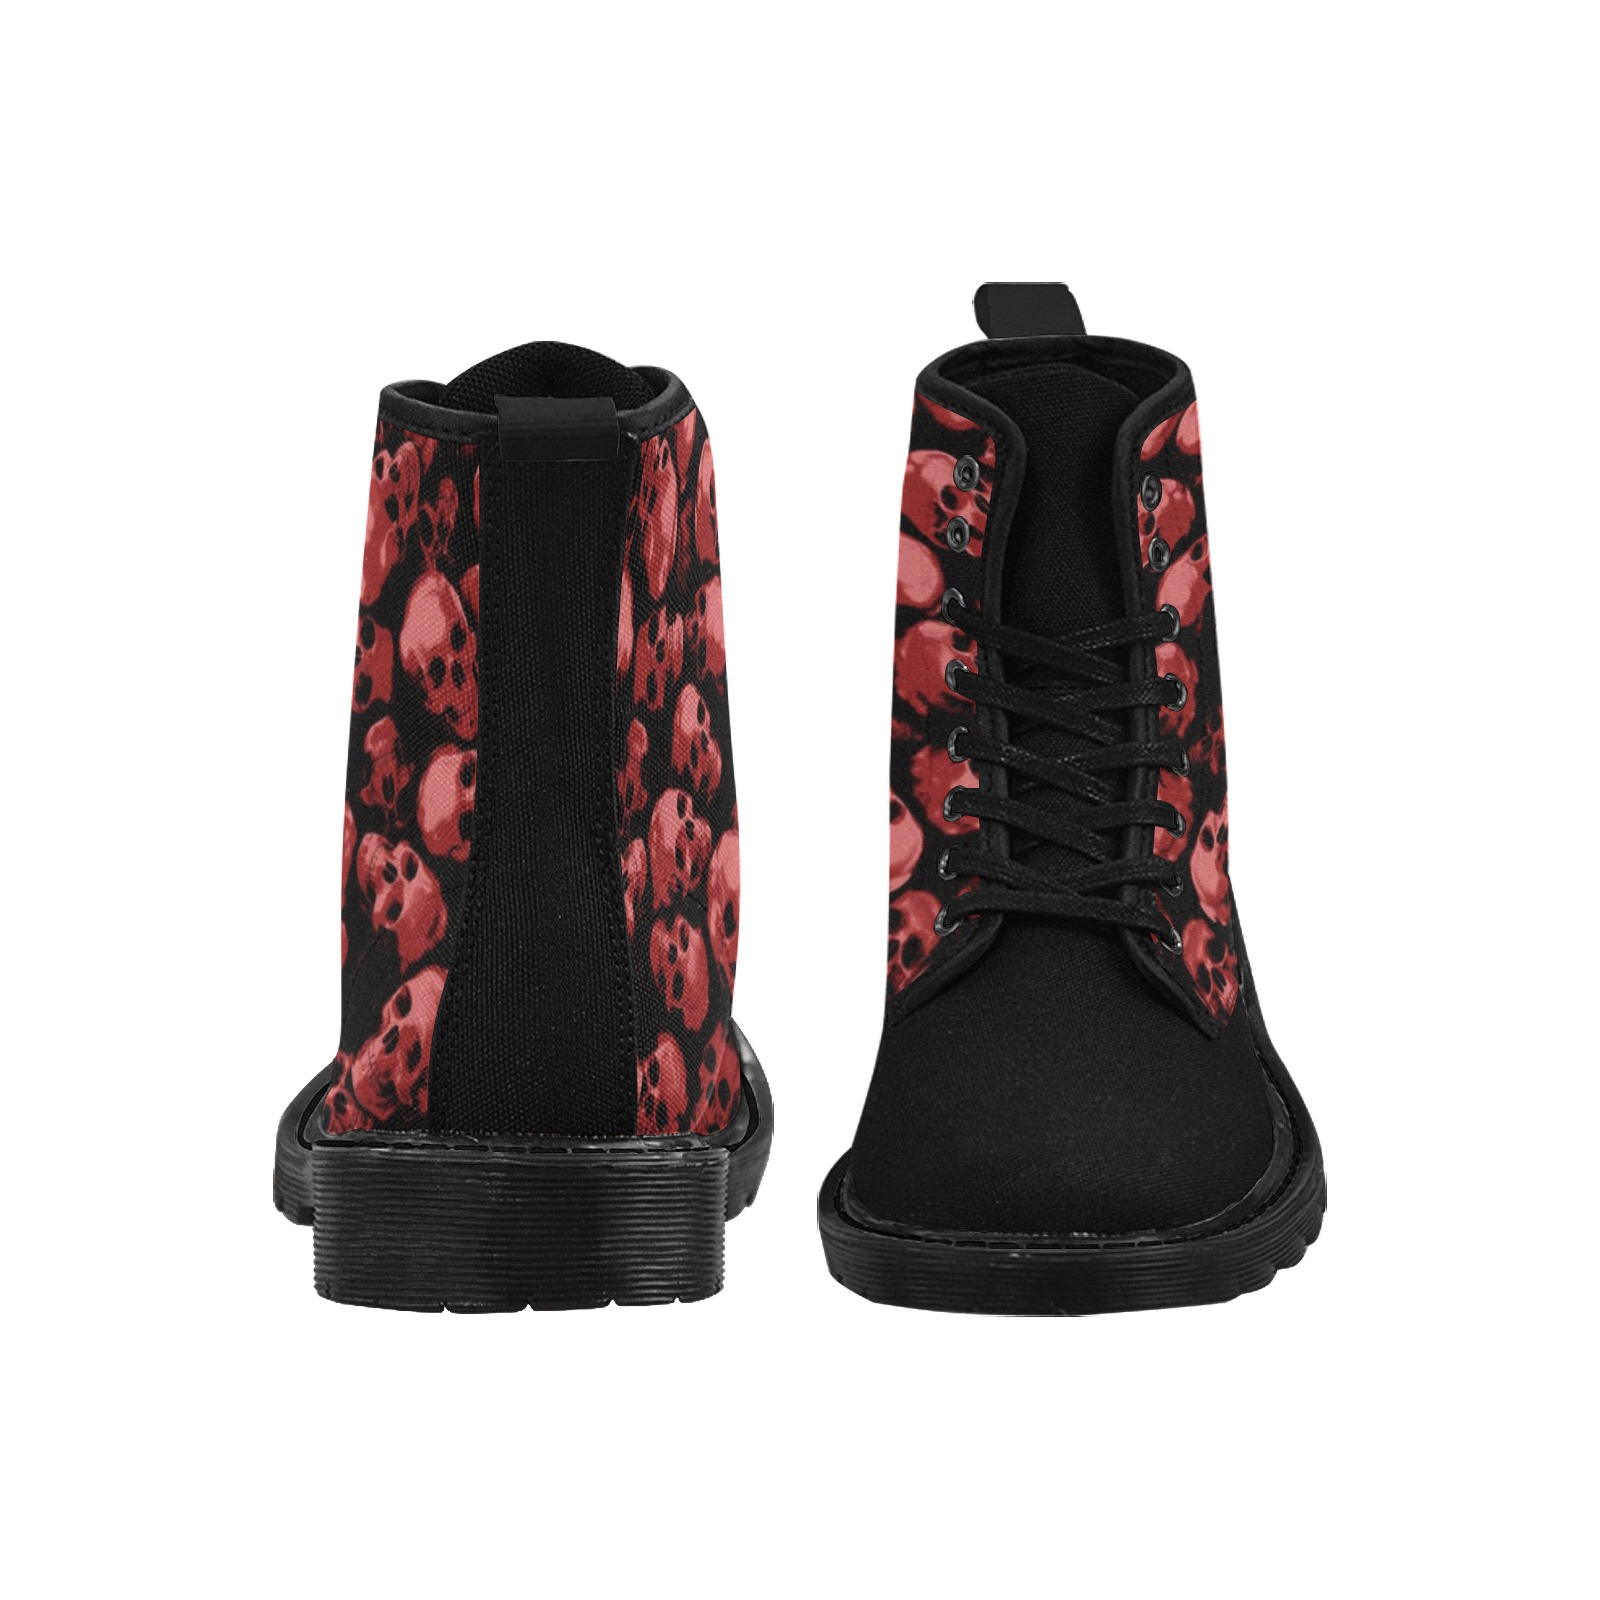 SKULLS - RED Martin Boots for Women (Black) (Model 1203H)